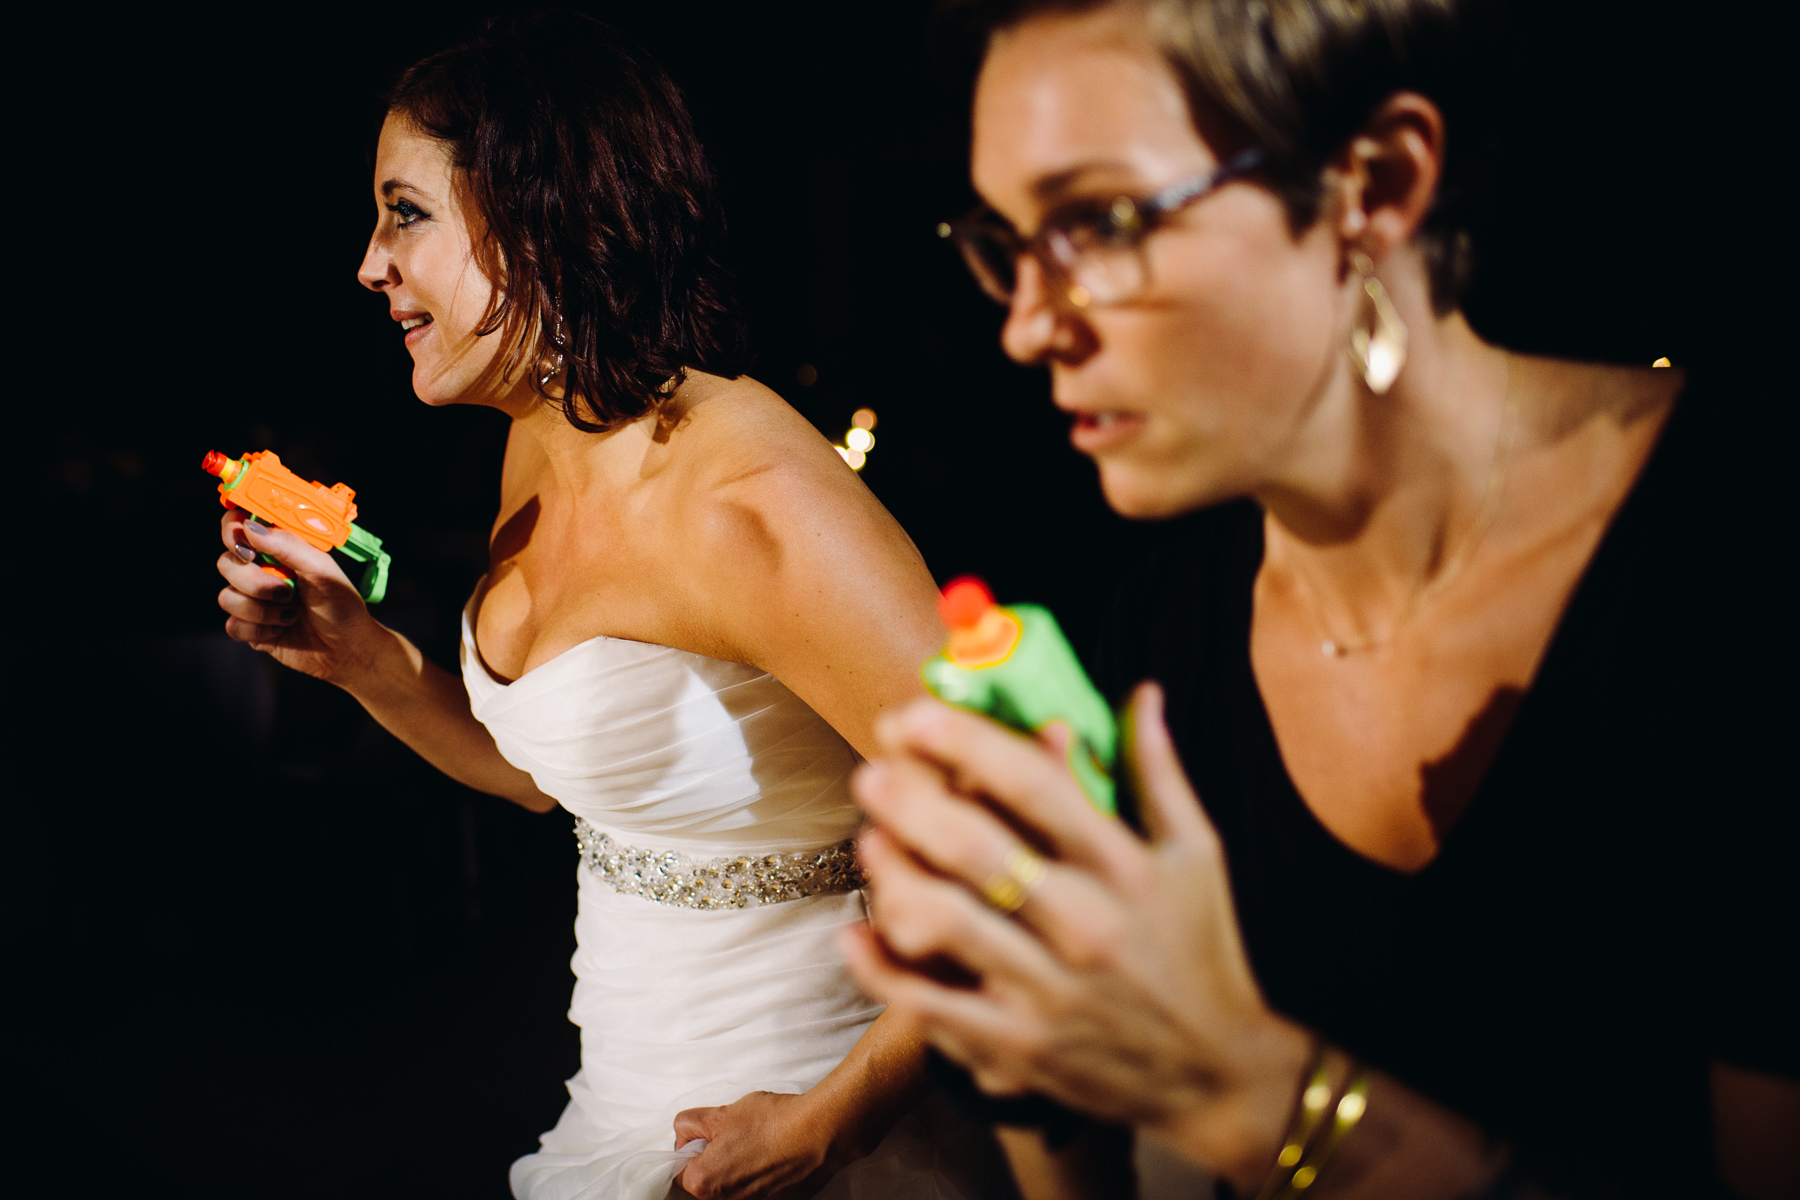 wedding nerf gun fight photos 